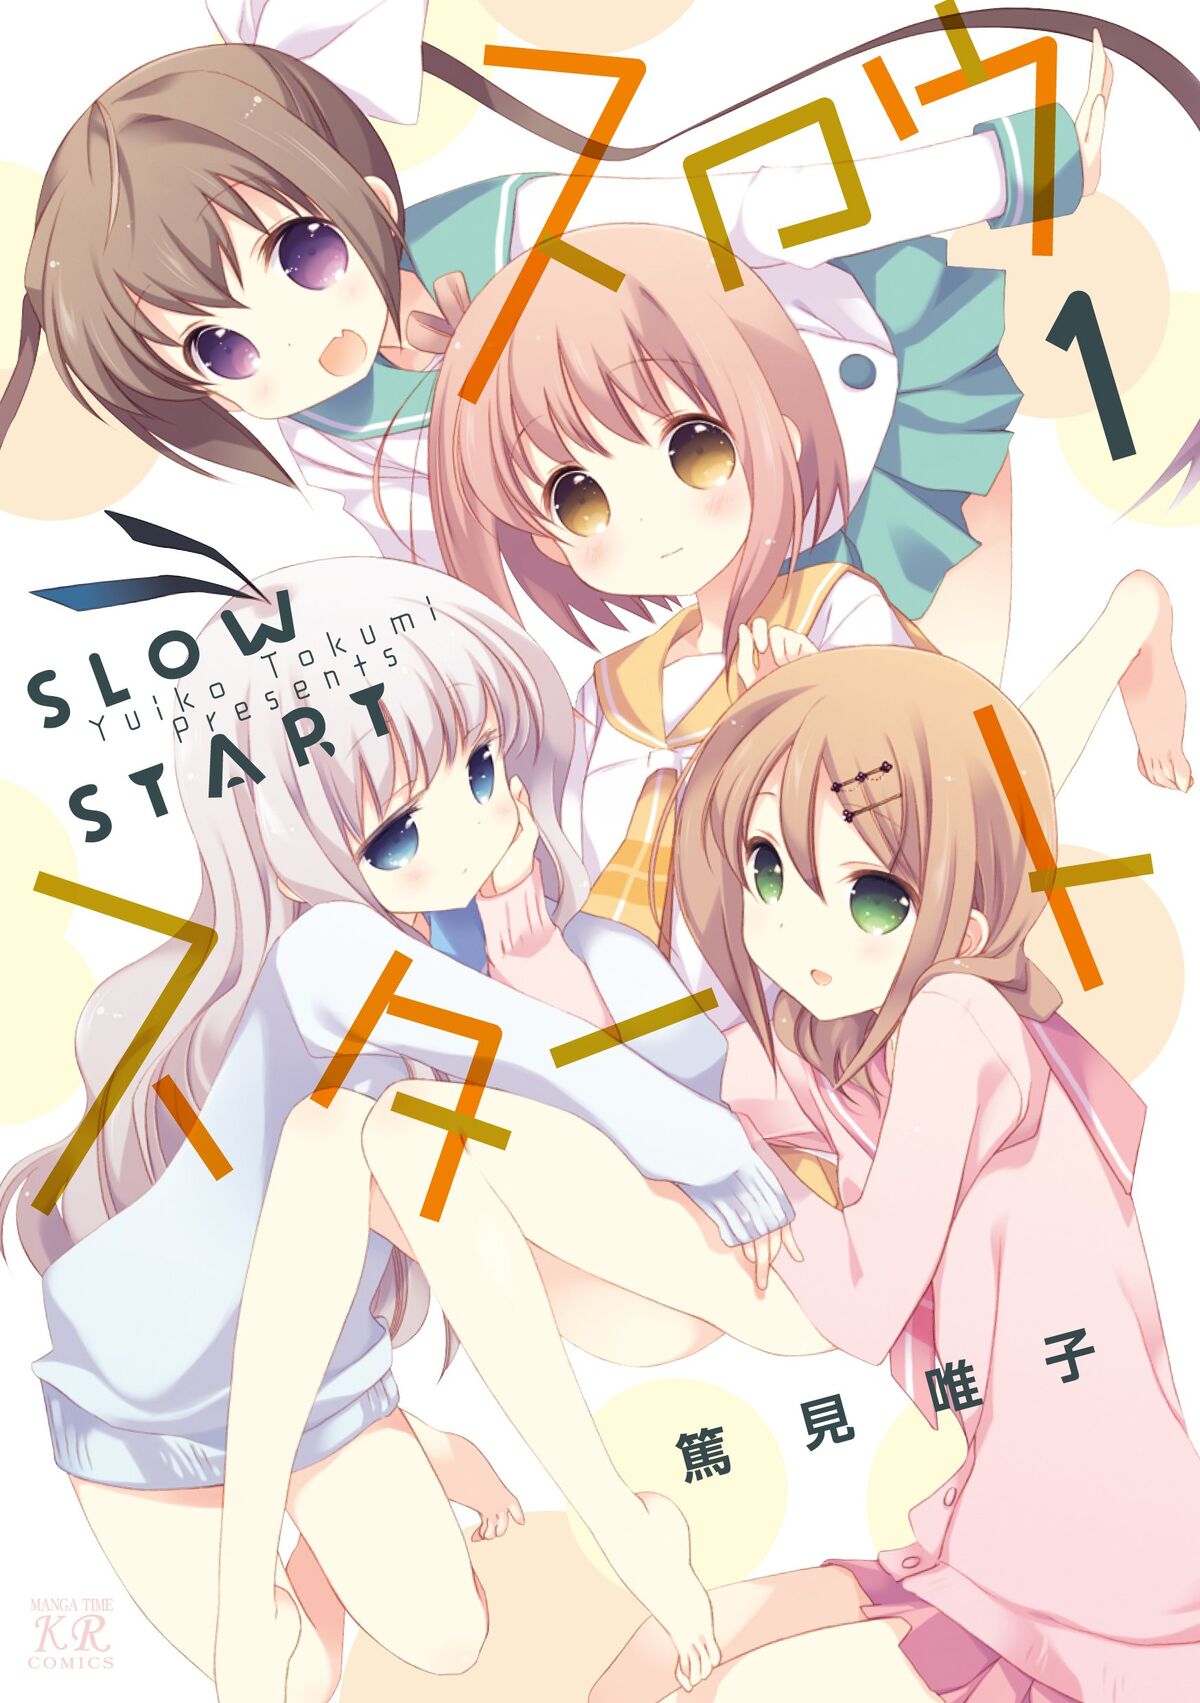 Slow Start (Manga) - TV Tropes